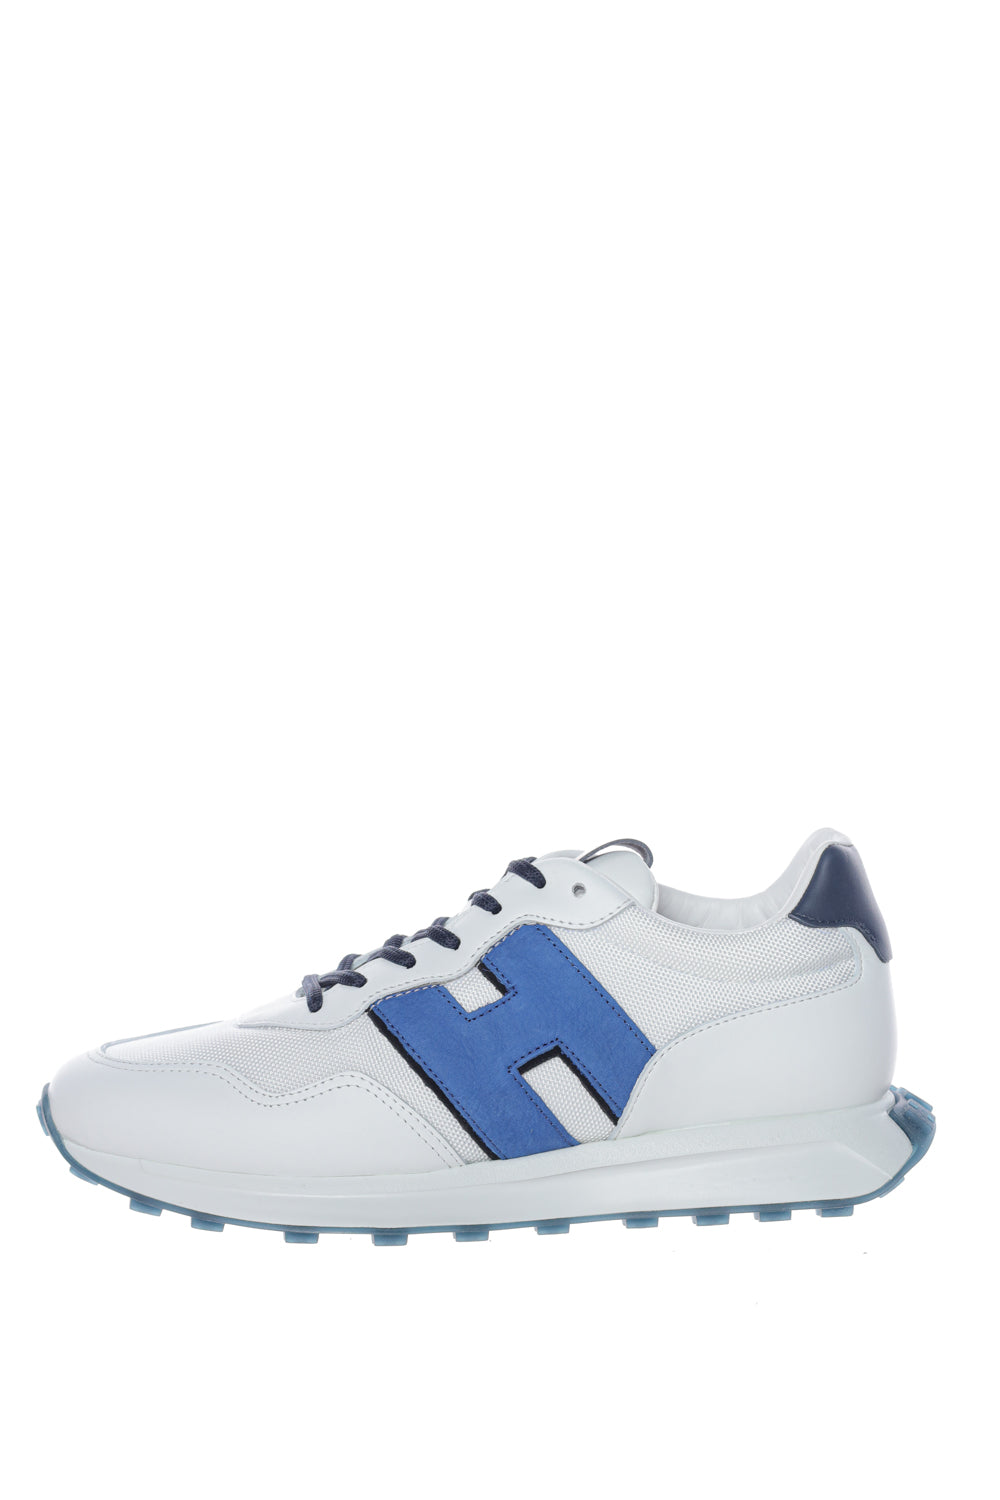 Pantofi sport H601 Hogan